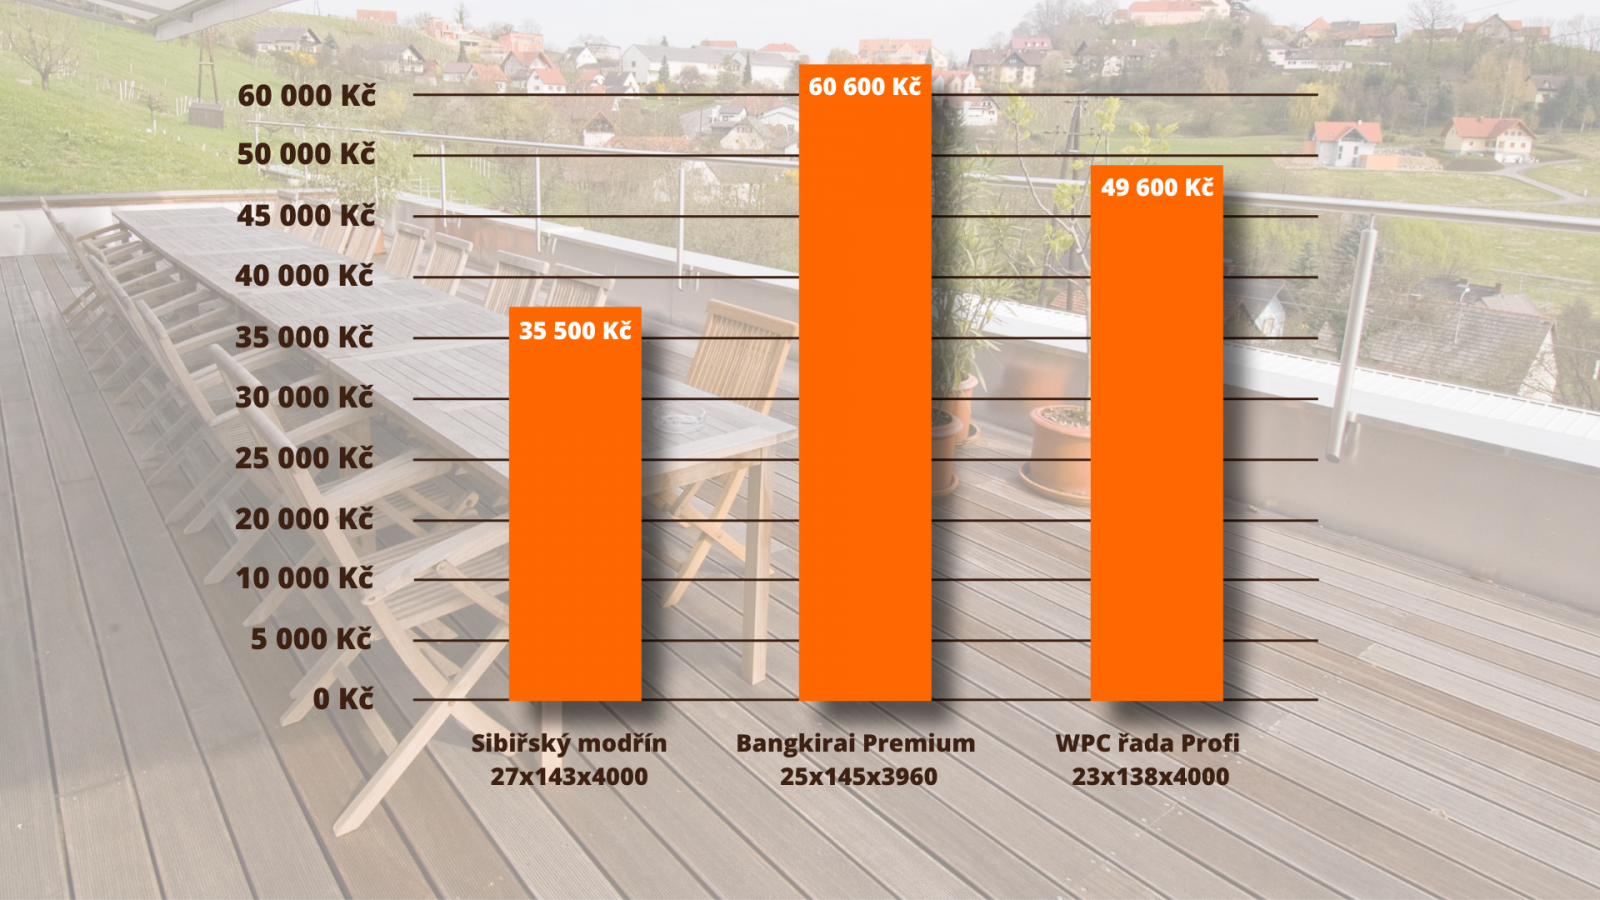 Přibližné vyčíslení ceny terasy v rozměru 4x4 m z různých materiálů